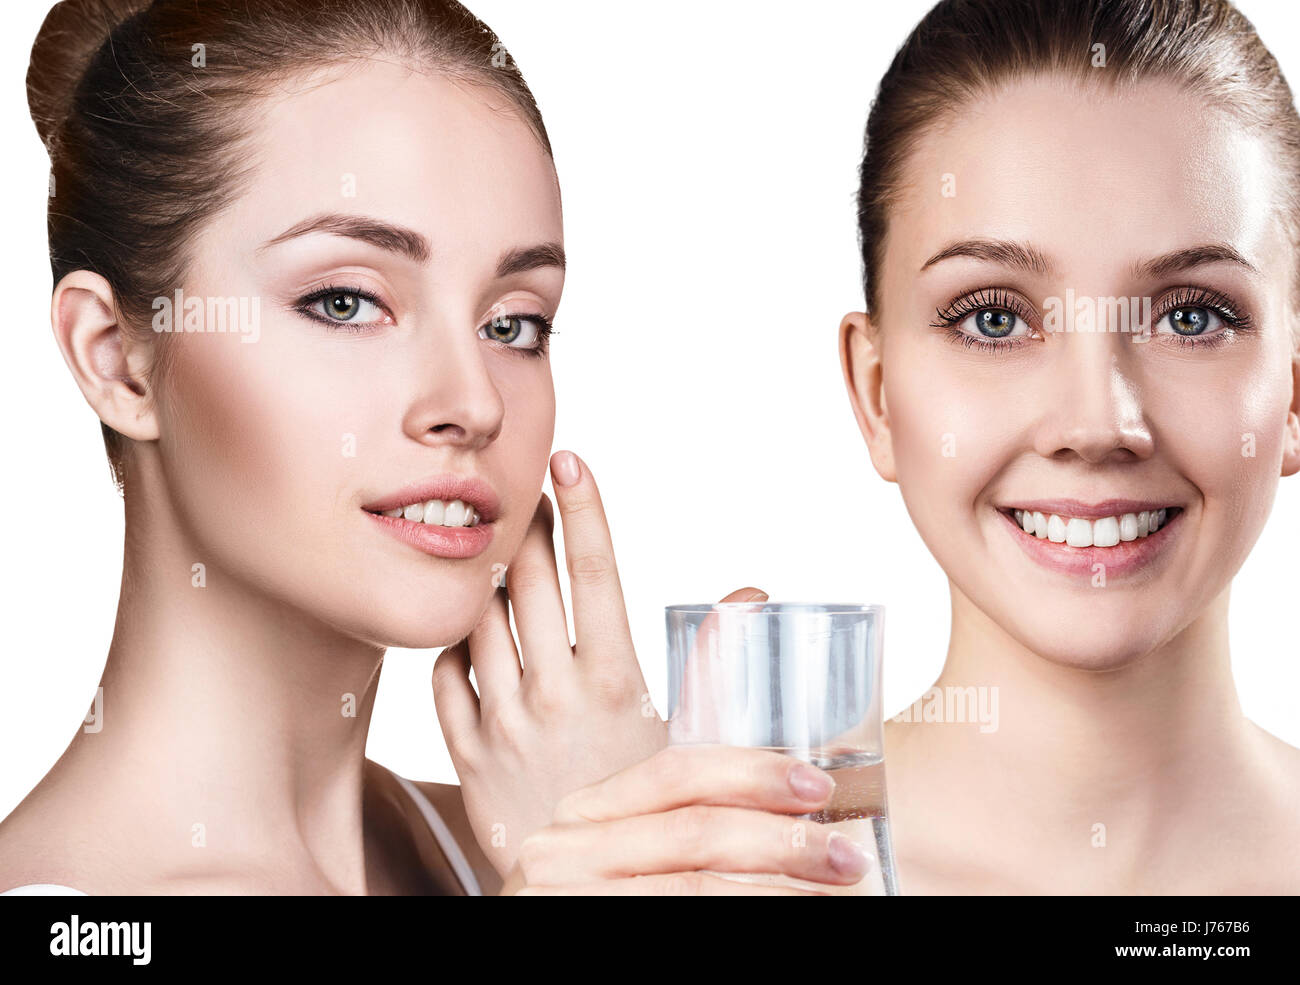 Le donne mostrano proprietà utili di acqua pulita. Foto Stock